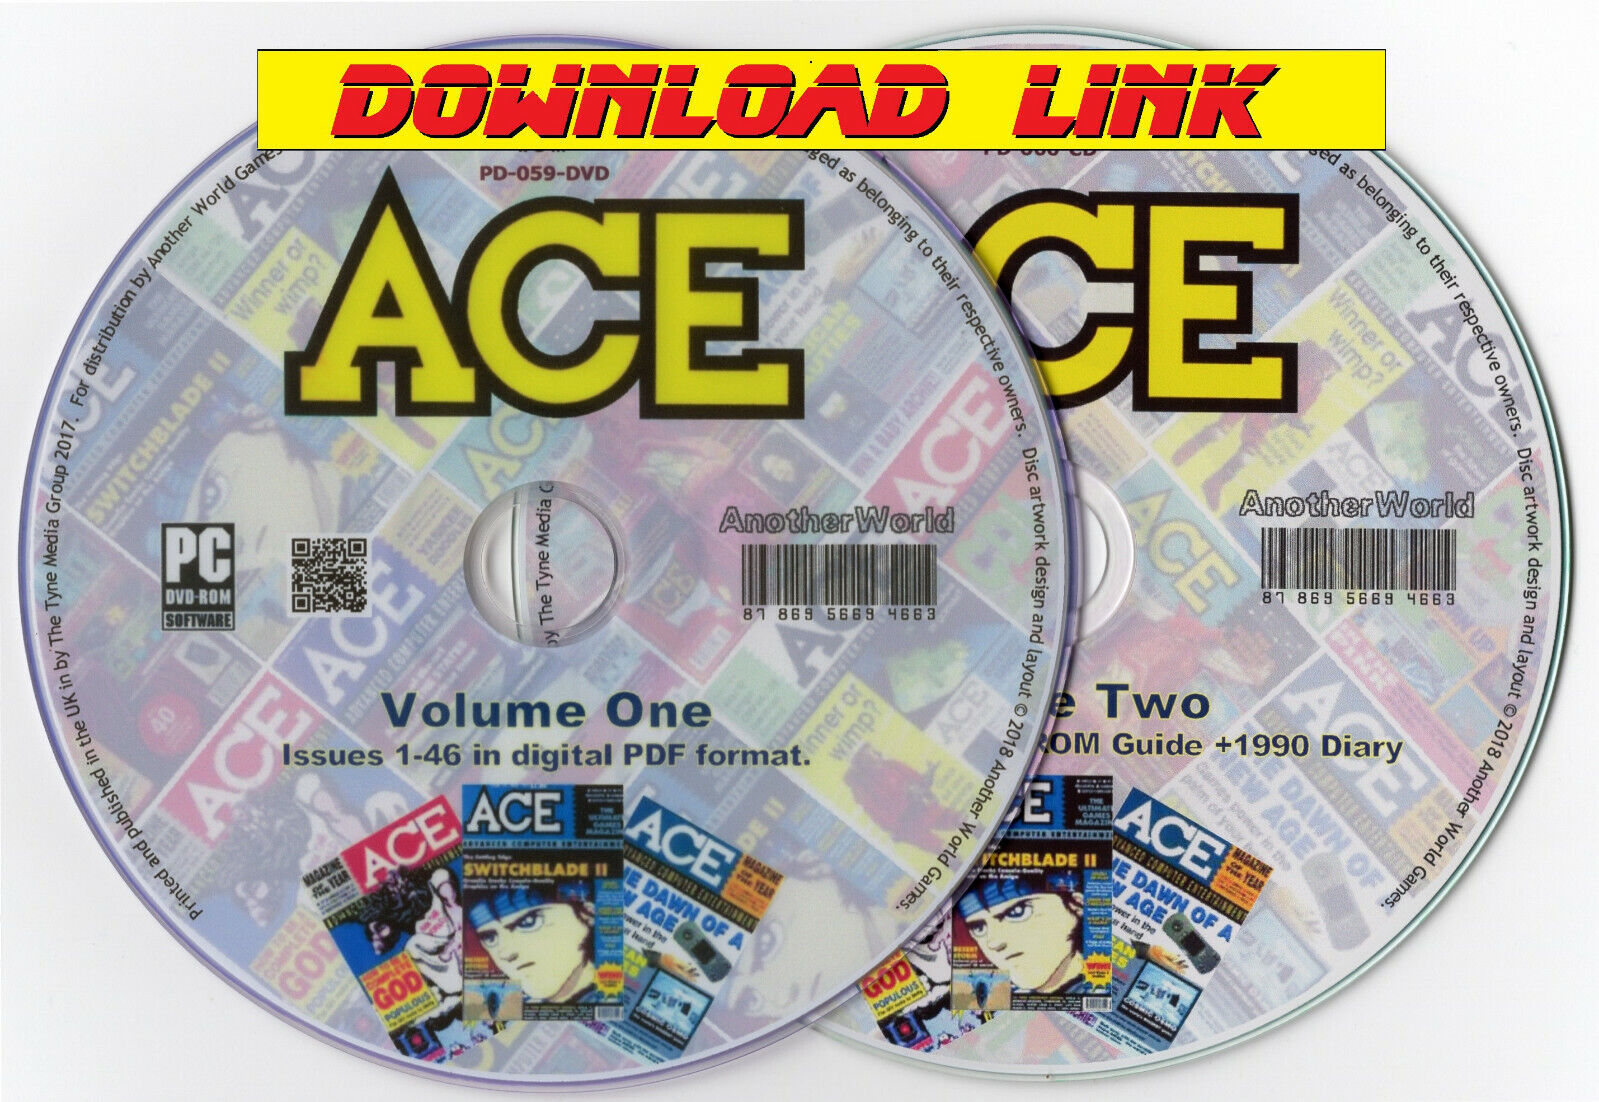 ACE MAGAZINE Full Collection DOWNLOAD Atari ST/Amiga/C64/Spectrum/Amstrad Games 